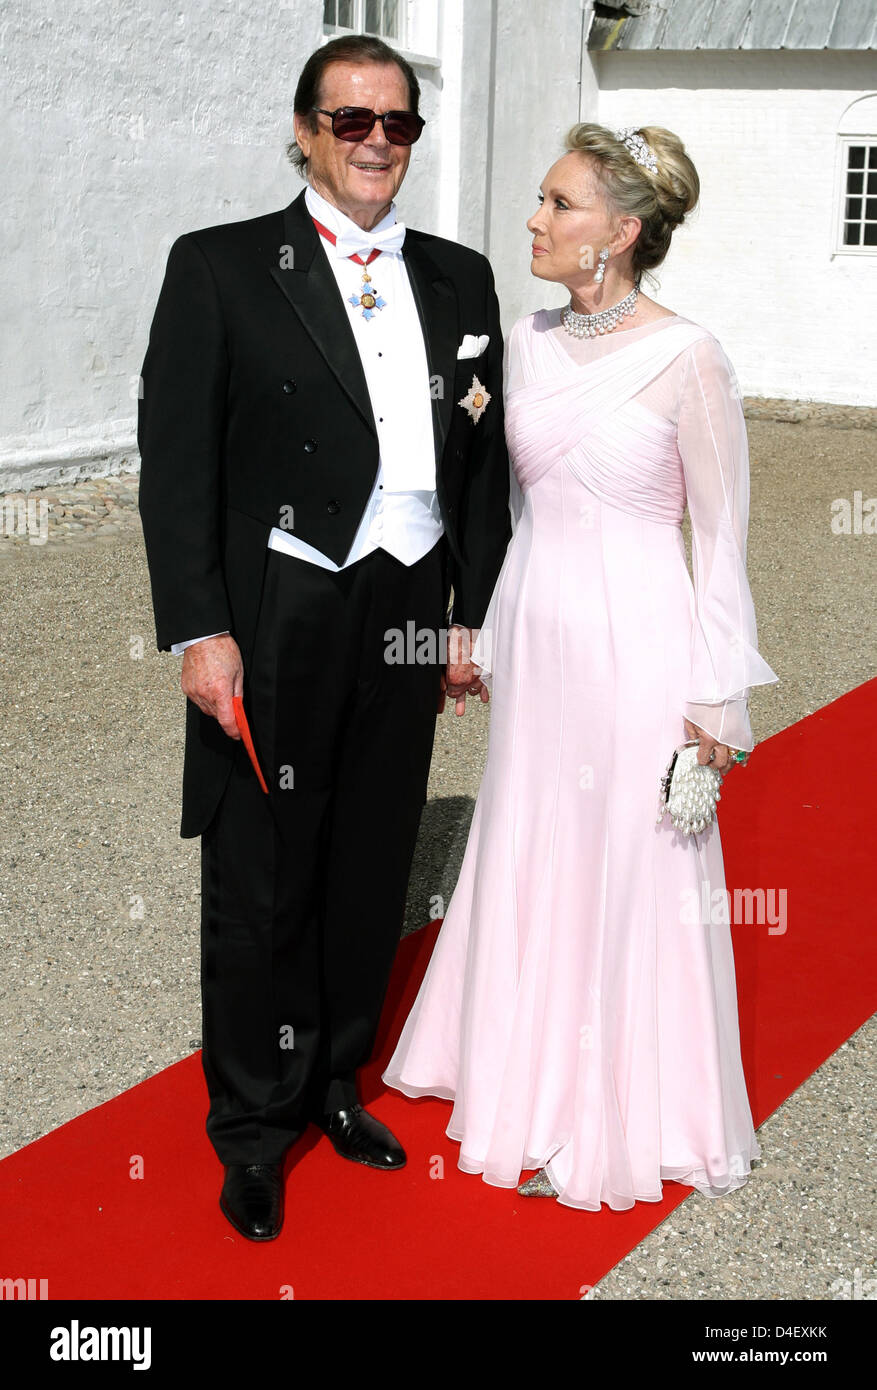 El actor Roger Moore y su esposa Christina Tholstrup llegar para la boda del príncipe Joaquín y la princesa Marie Cavallier en la iglesia de Mogeltonder, Dinamarca, 24 de mayo de 2008. Foto: Kay Nietfeld Foto de stock